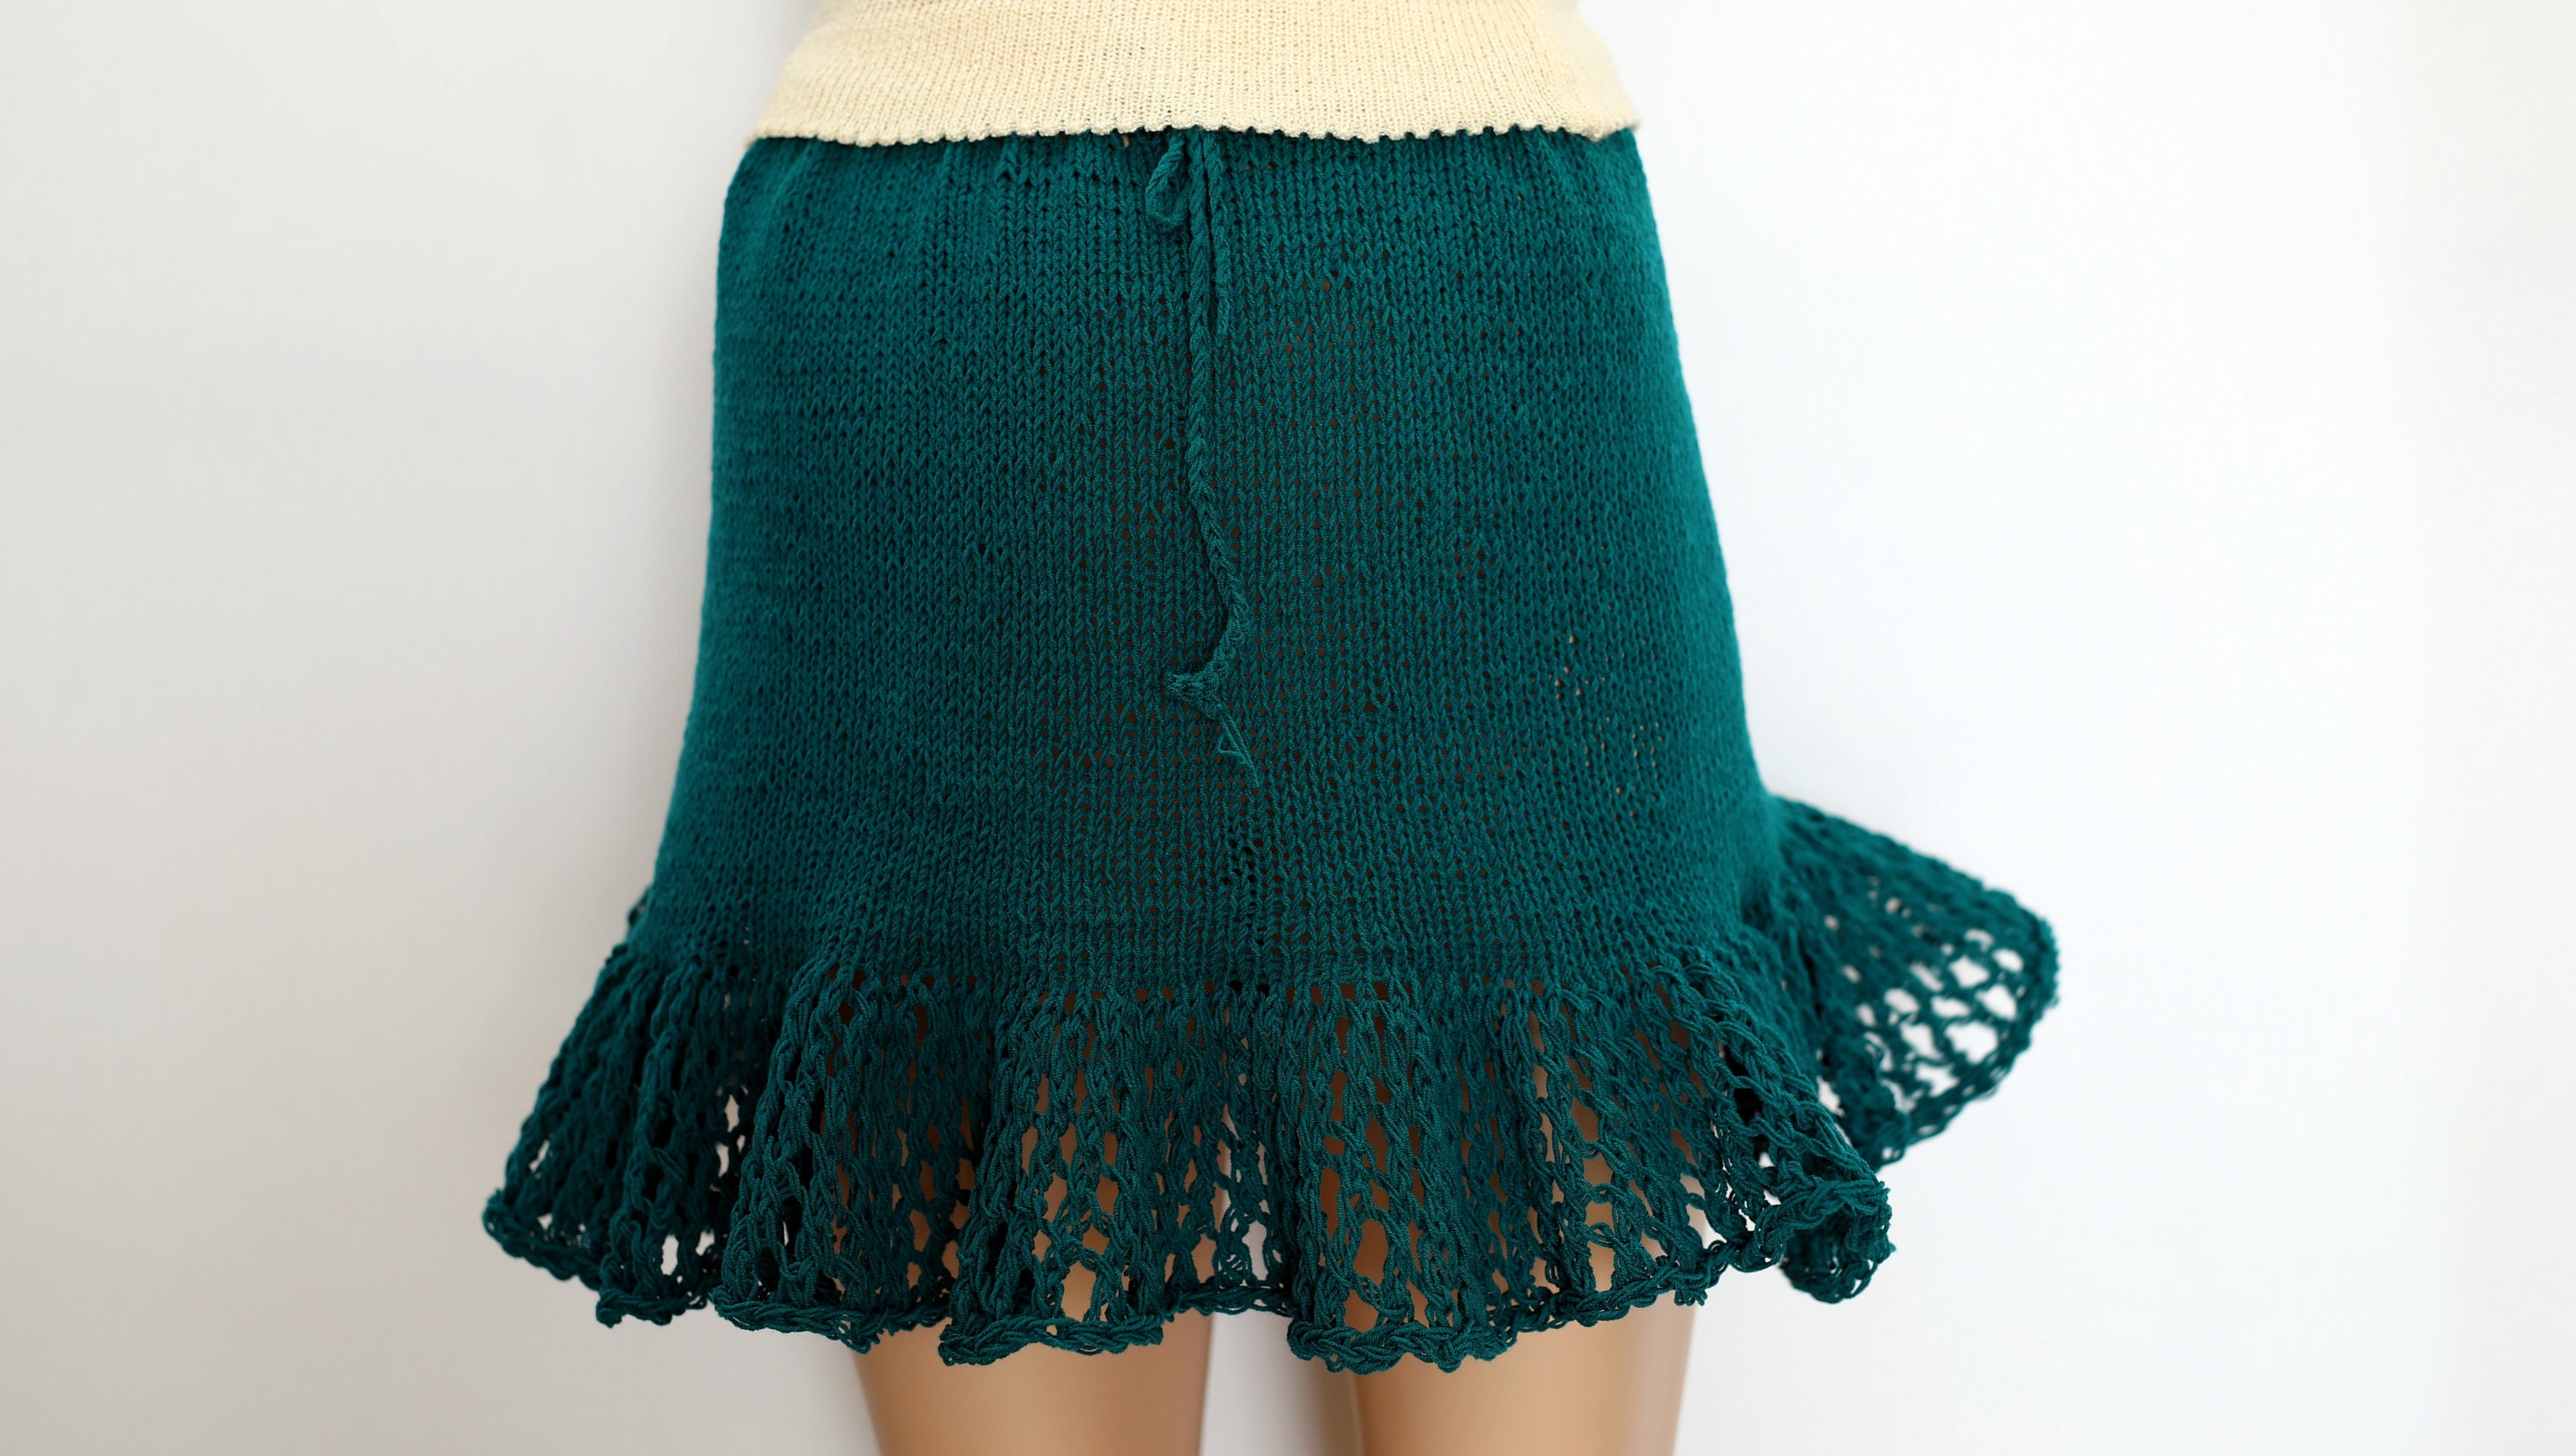 Festival Skirt Knit Skirt Clothing Lace Knit Skirt Mini Skirt | Etsy